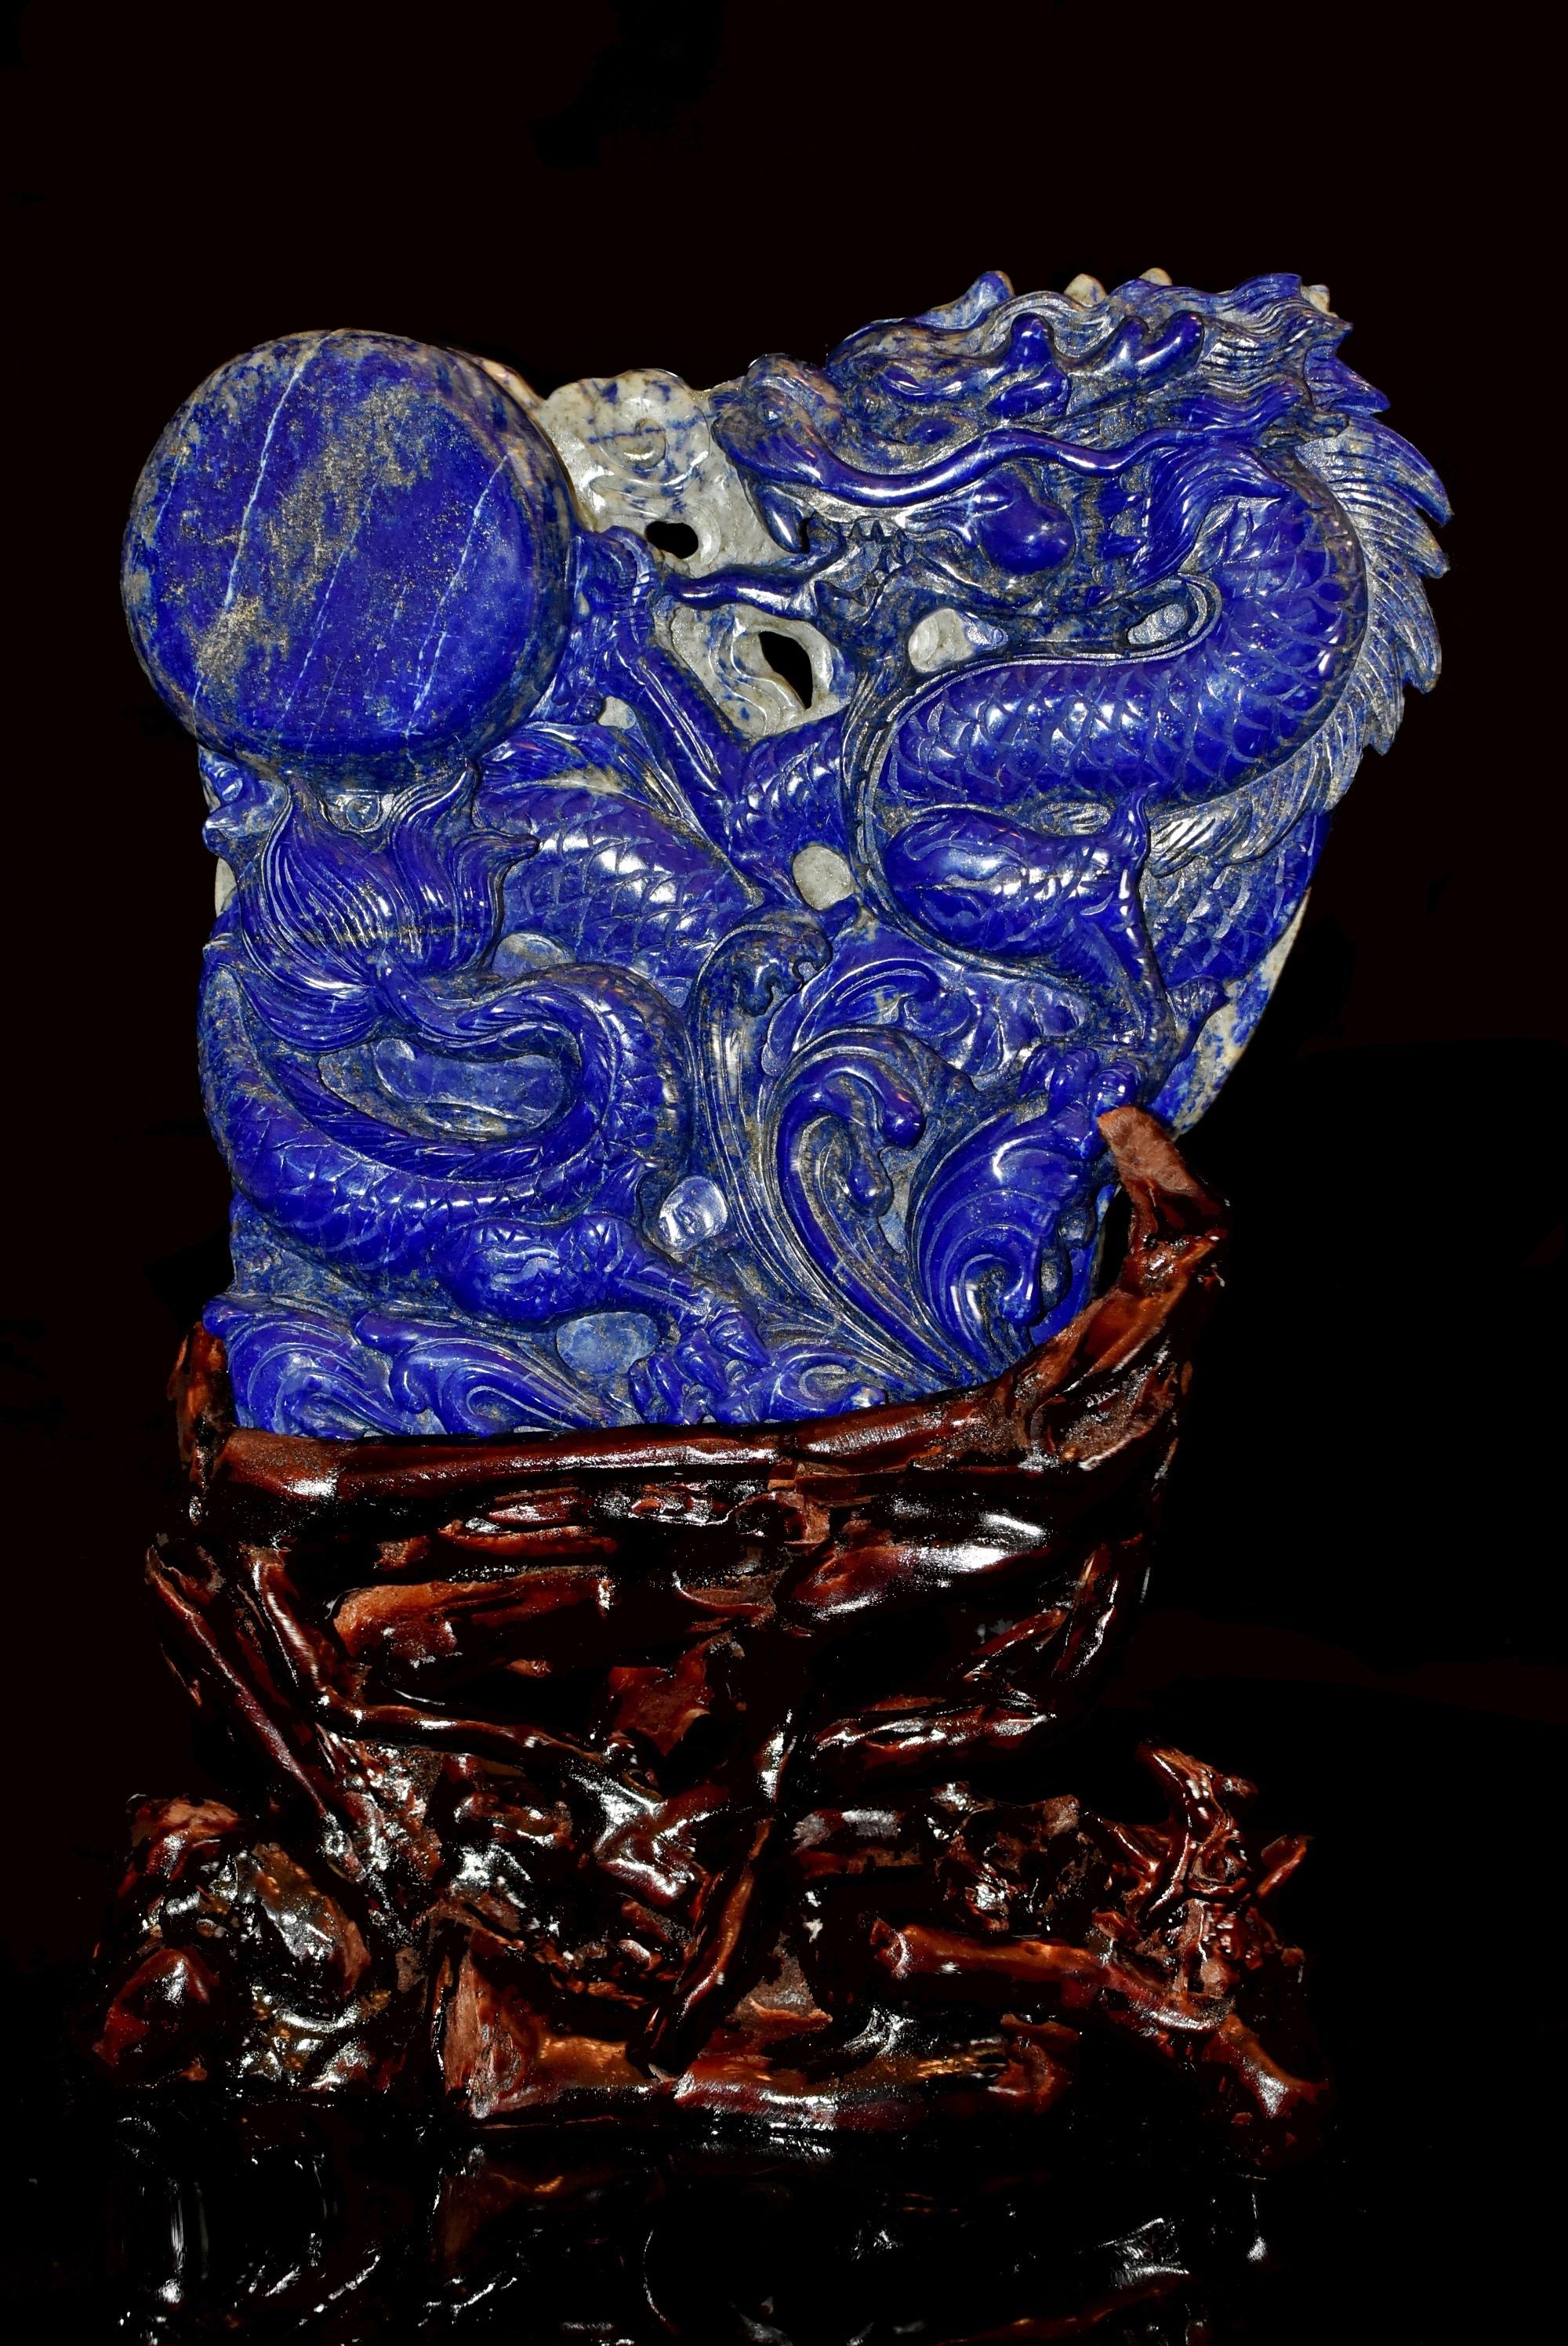 Eine schöne große Statue eines aufrechten Drachens, der einer Perle nachjagt, handgeschnitzt aus natürlichem Lapislazuli der Güteklasse Fine mit einem Gewicht von 4,5 lb. Meisterhafte Darstellung des Drachens mit seinen tiefen Schuppen, dem